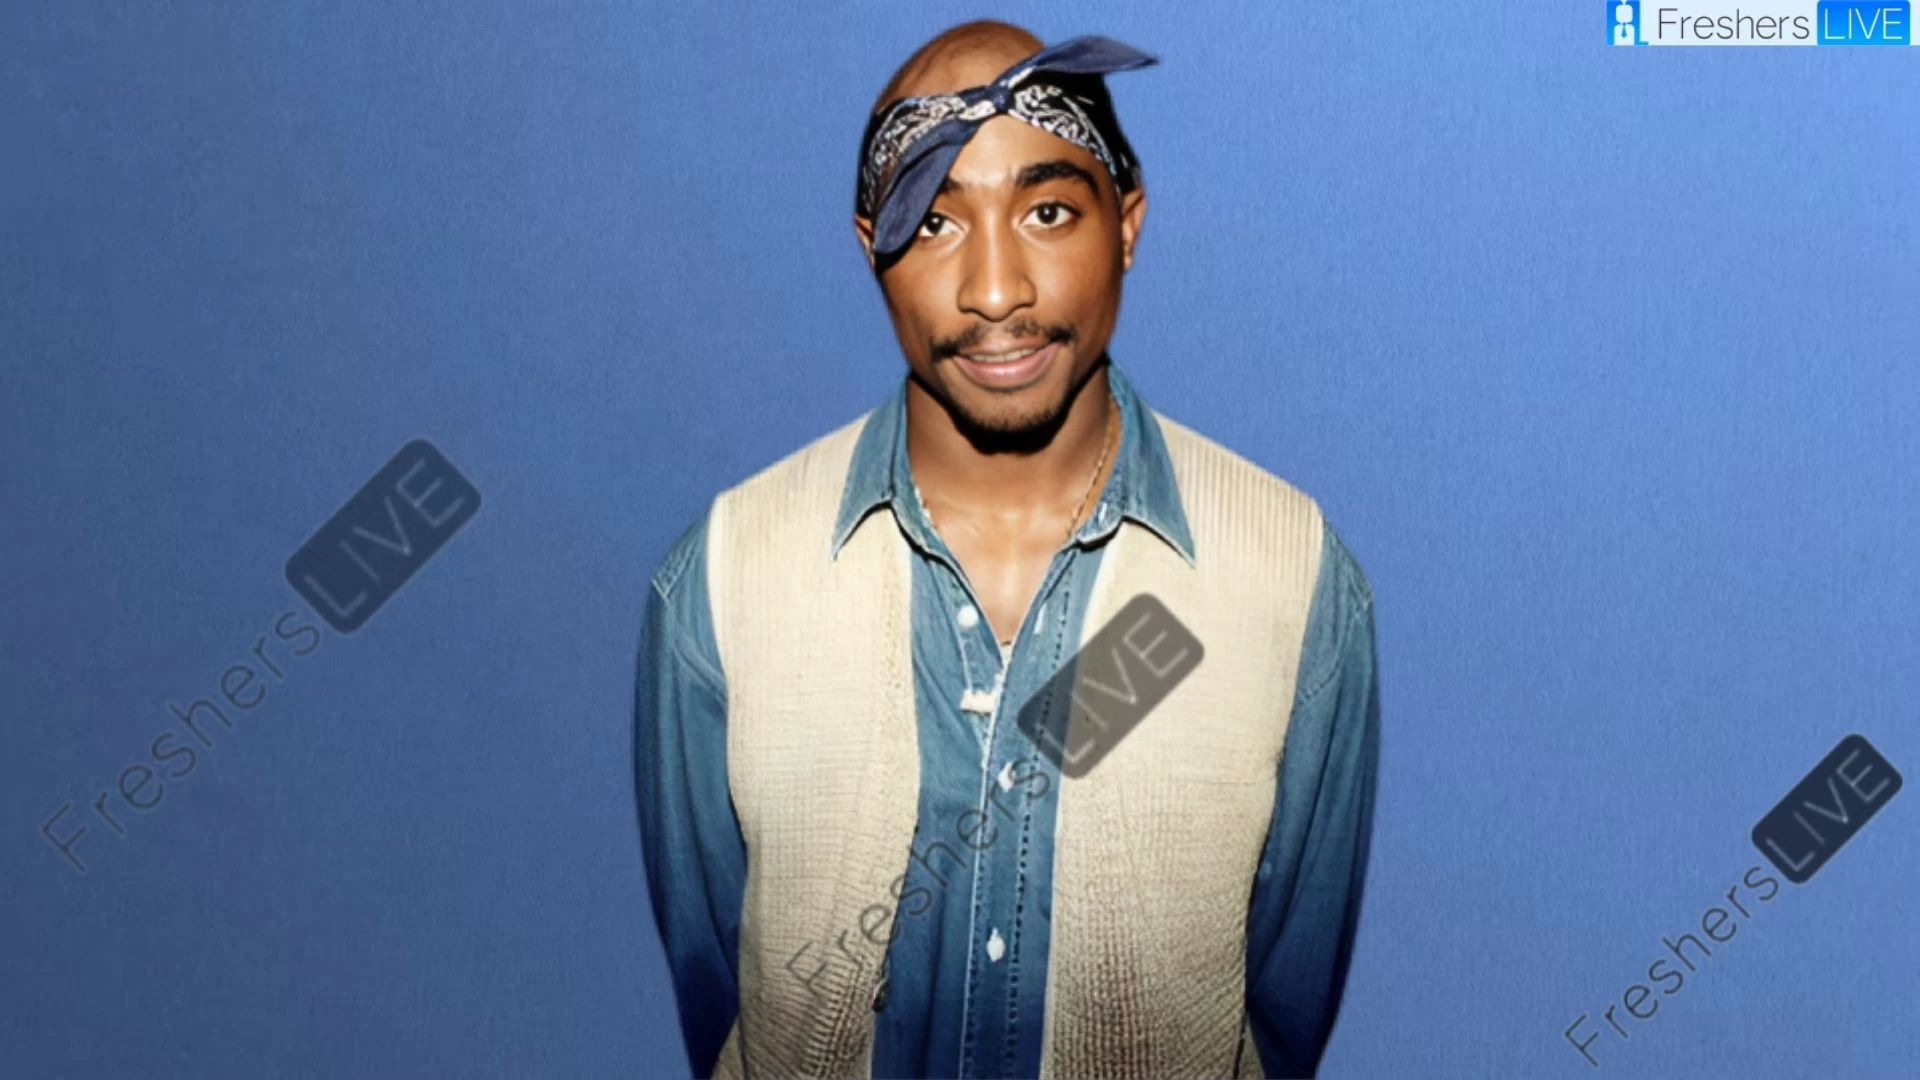 Etnia de Tupac Shakur, ¿Cuál es la etnia de Tupac Shakur?